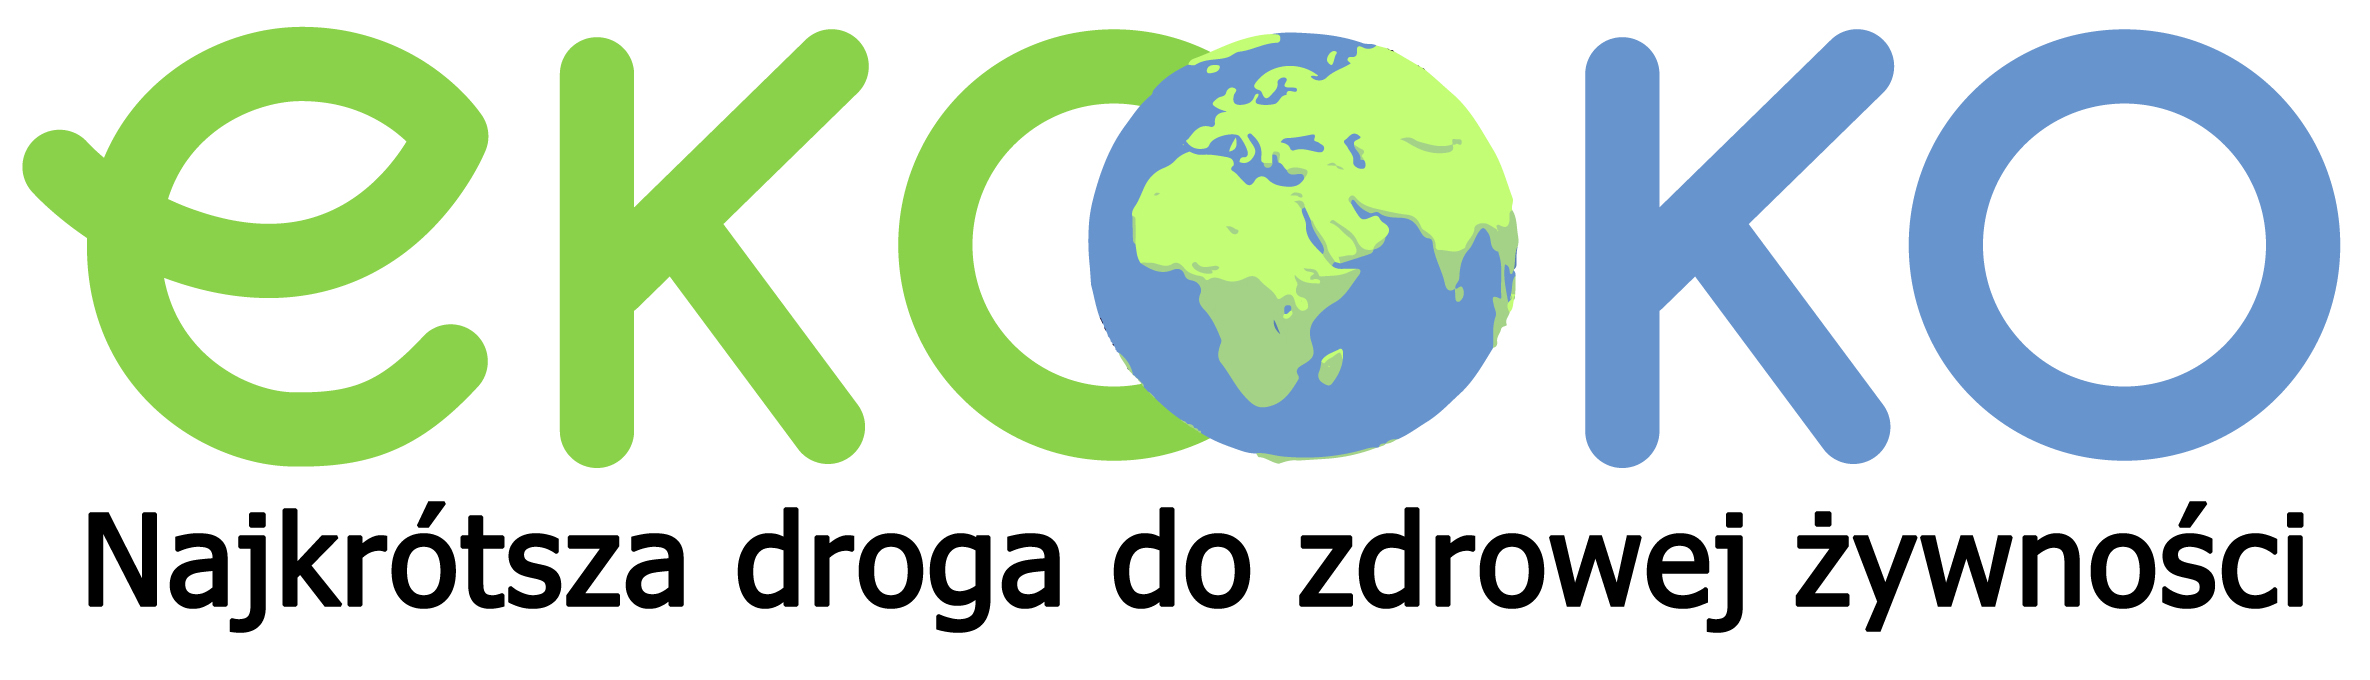 EkoOko.org